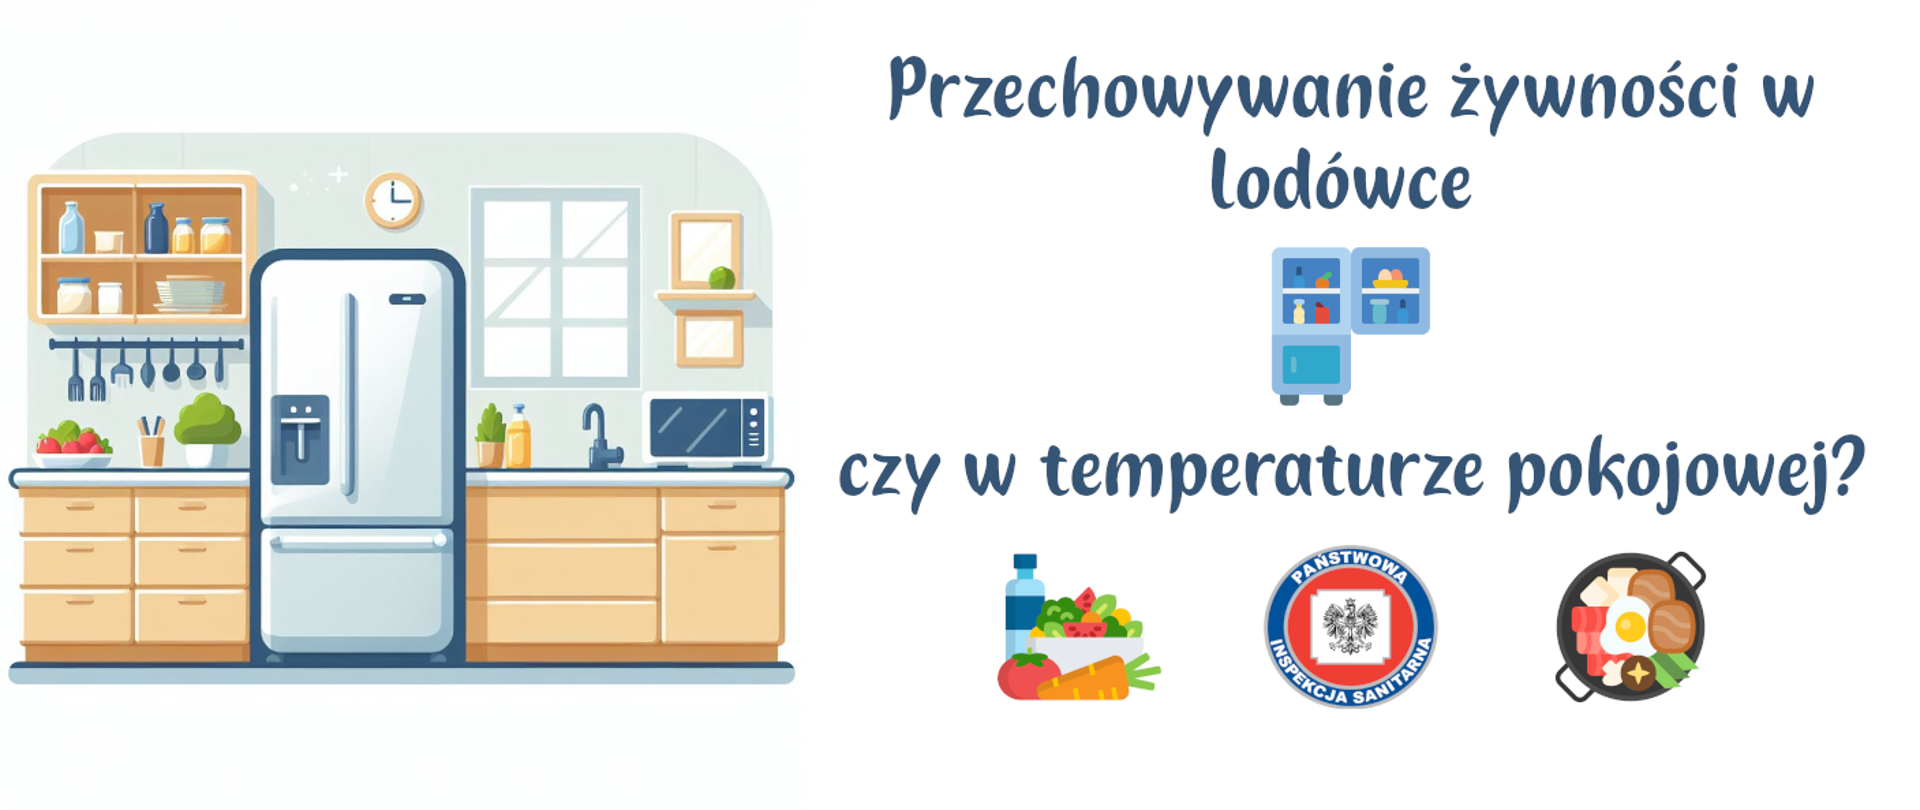 Przechowywanie żywności w lodówce czy w temperaturze pokojowej